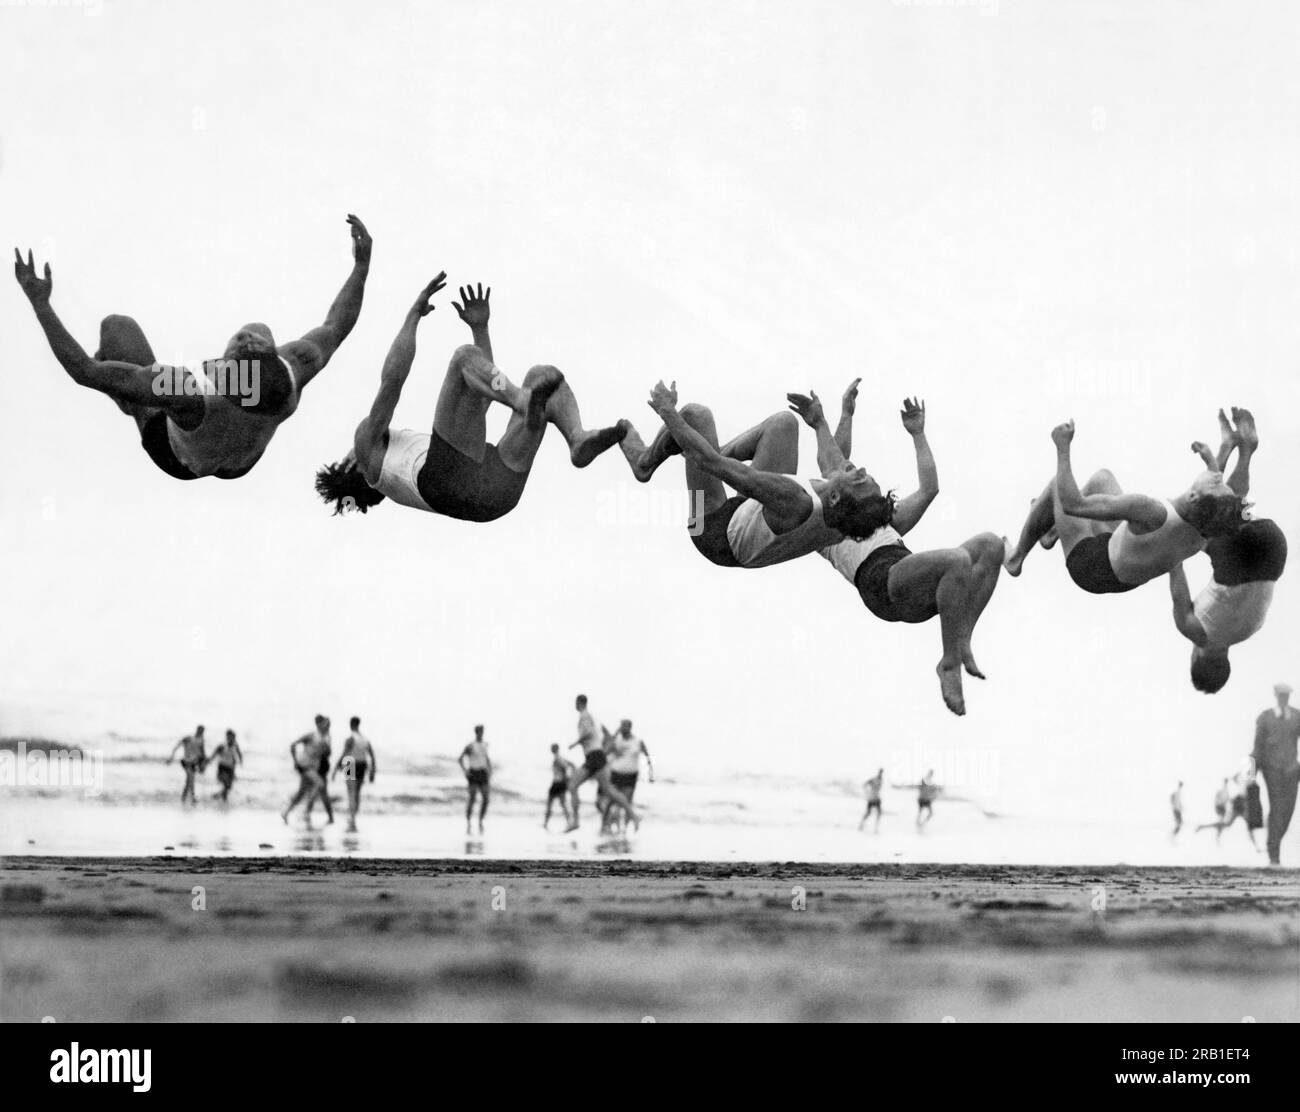 San Francisco, Californie : 1 janvier 1932. Six membres du Club olympique tentent de gagner le courage de sauter dans les 54 degrés de l'océan Pacifique lors de l'événement annuel du nouvel an. Banque D'Images